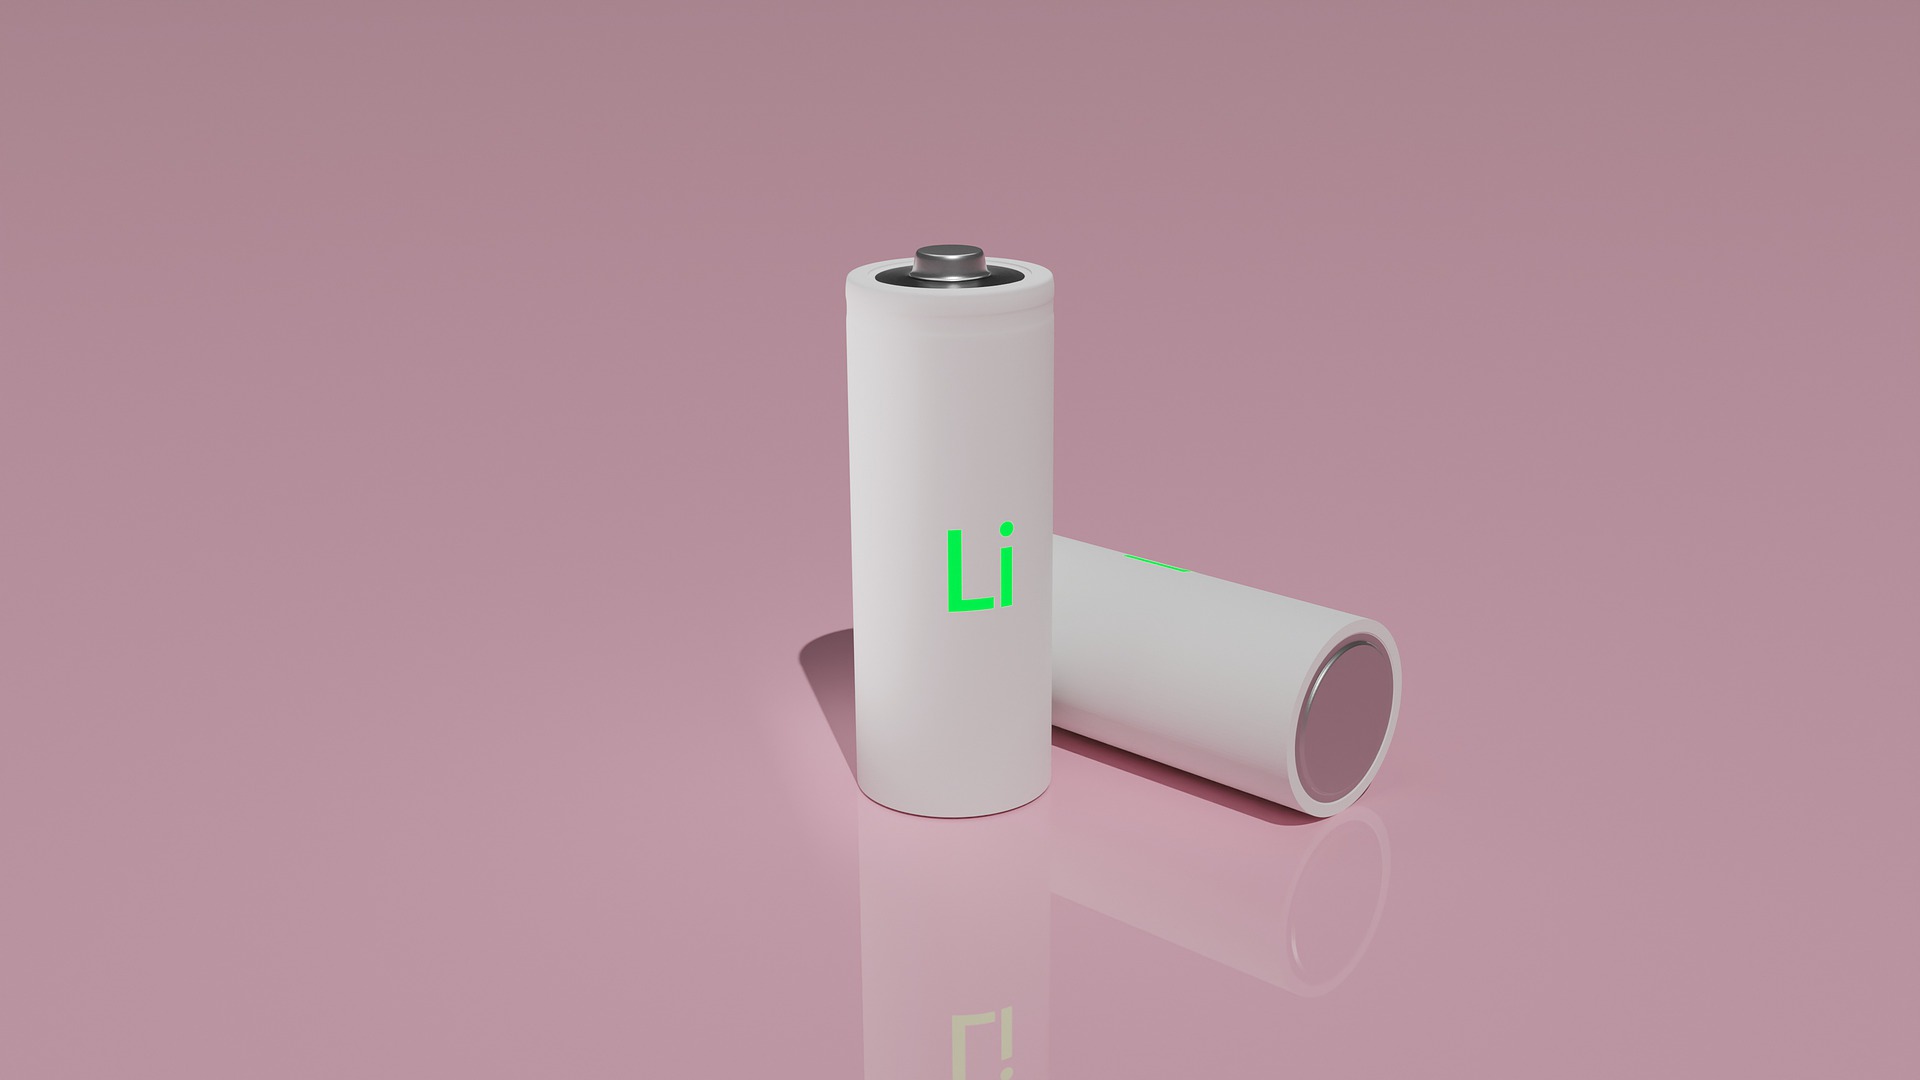 Com novas descobertas científicas, será o fim da bateria de lítio? Pesquisa mostra que mercado crescerá mais de 15% até 2030 e dependência do metal não deve diminuir